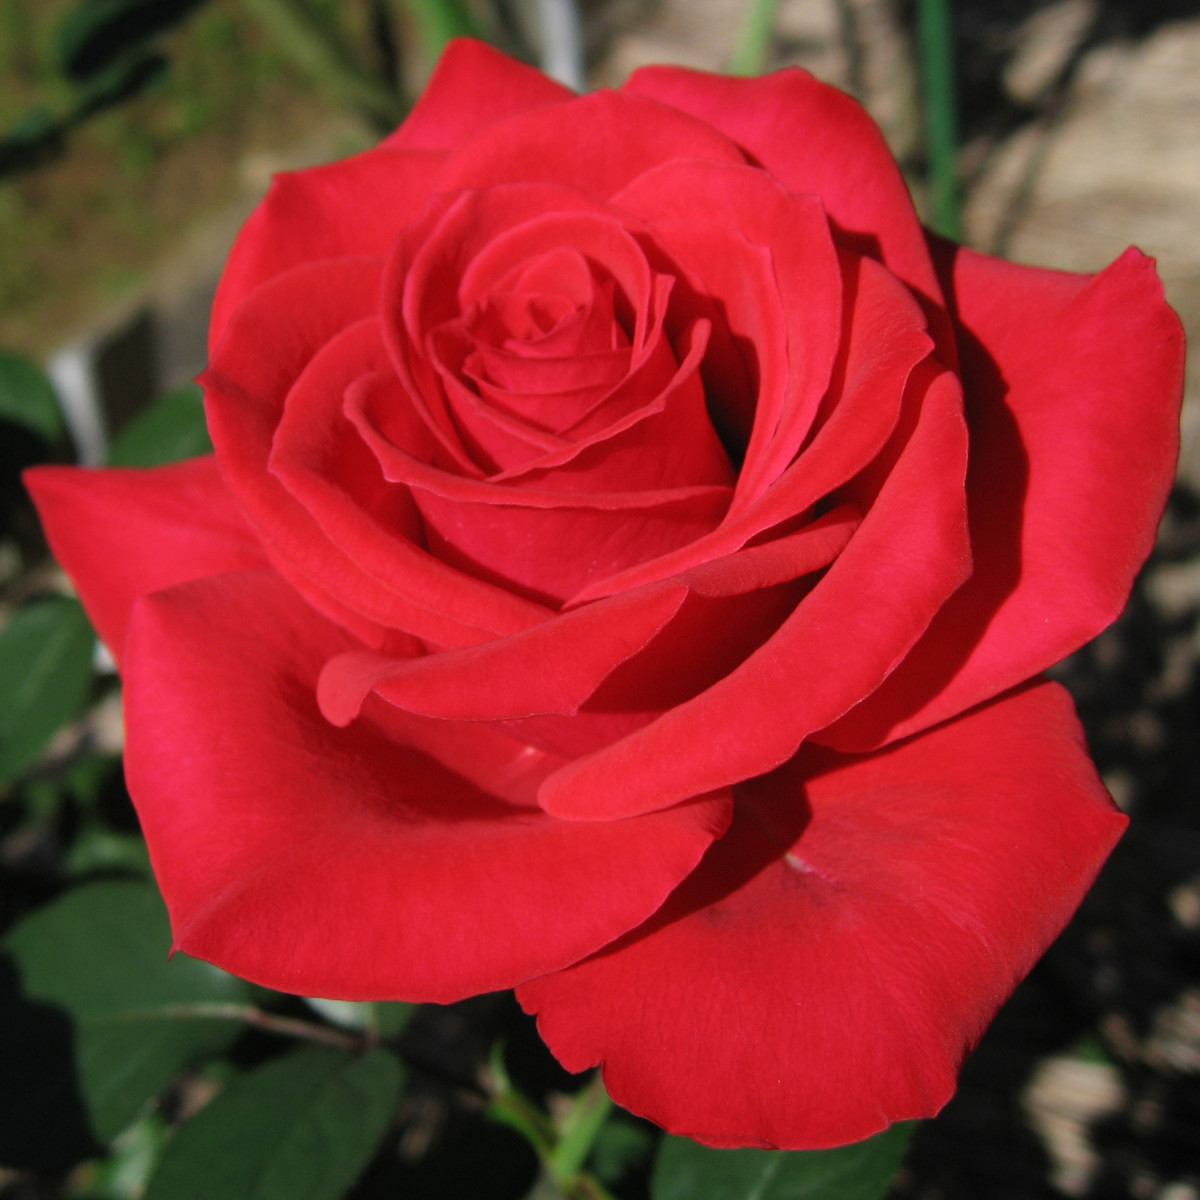 玫瑰是一种著名的爱情魔法植物。